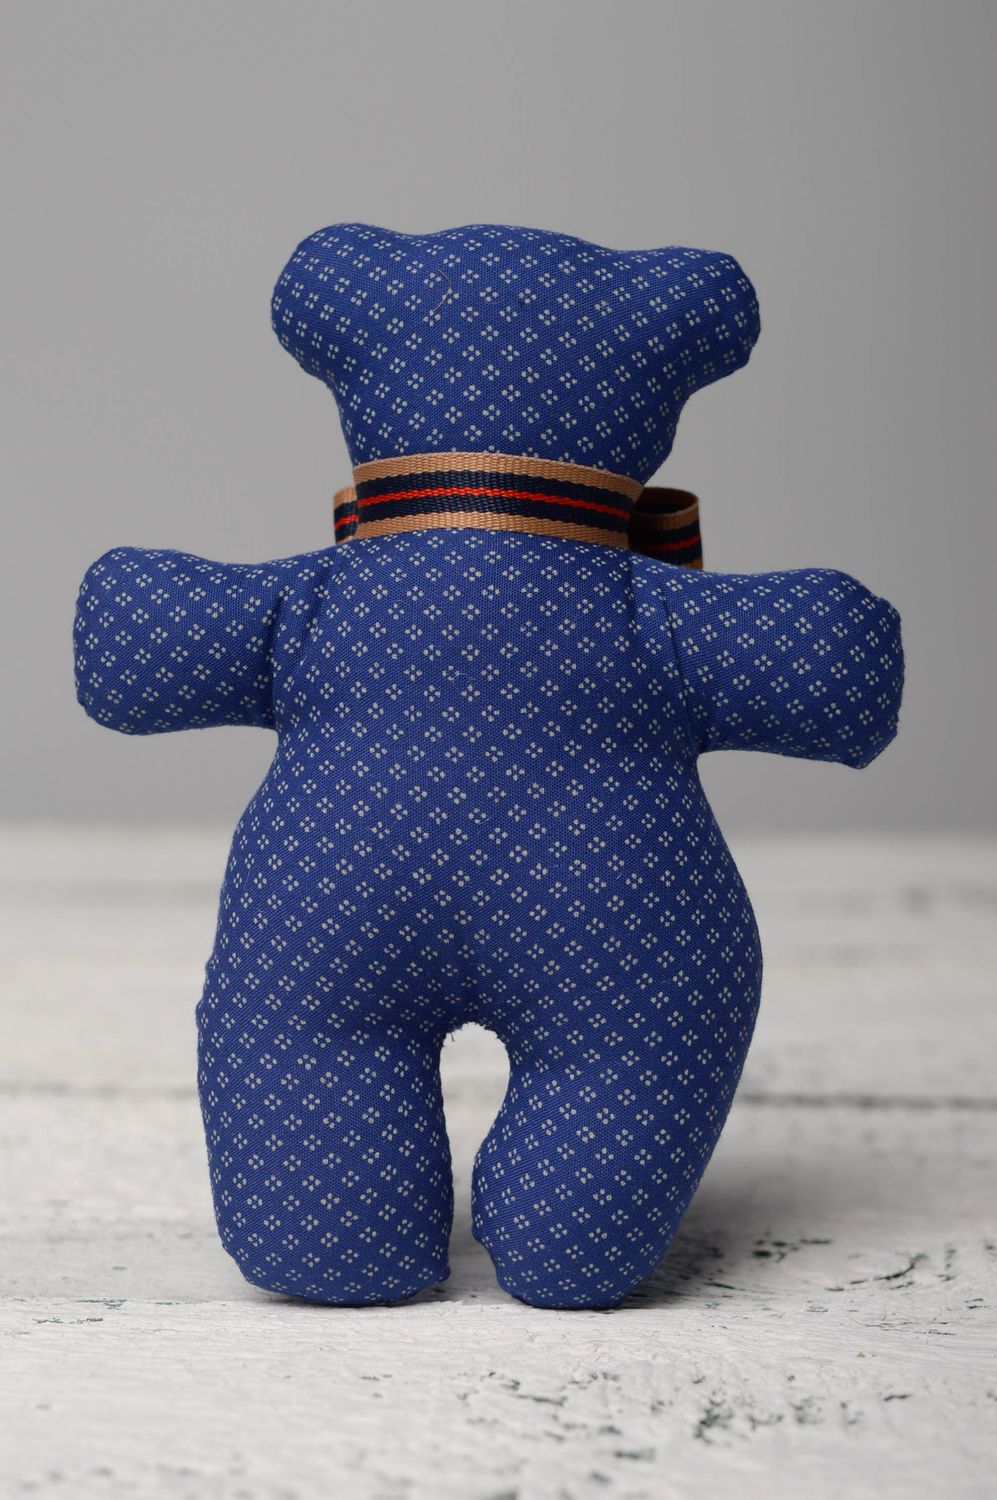 Мягкая игрушка из ткани пошитая вручную Мягкий синий мишка фото 5